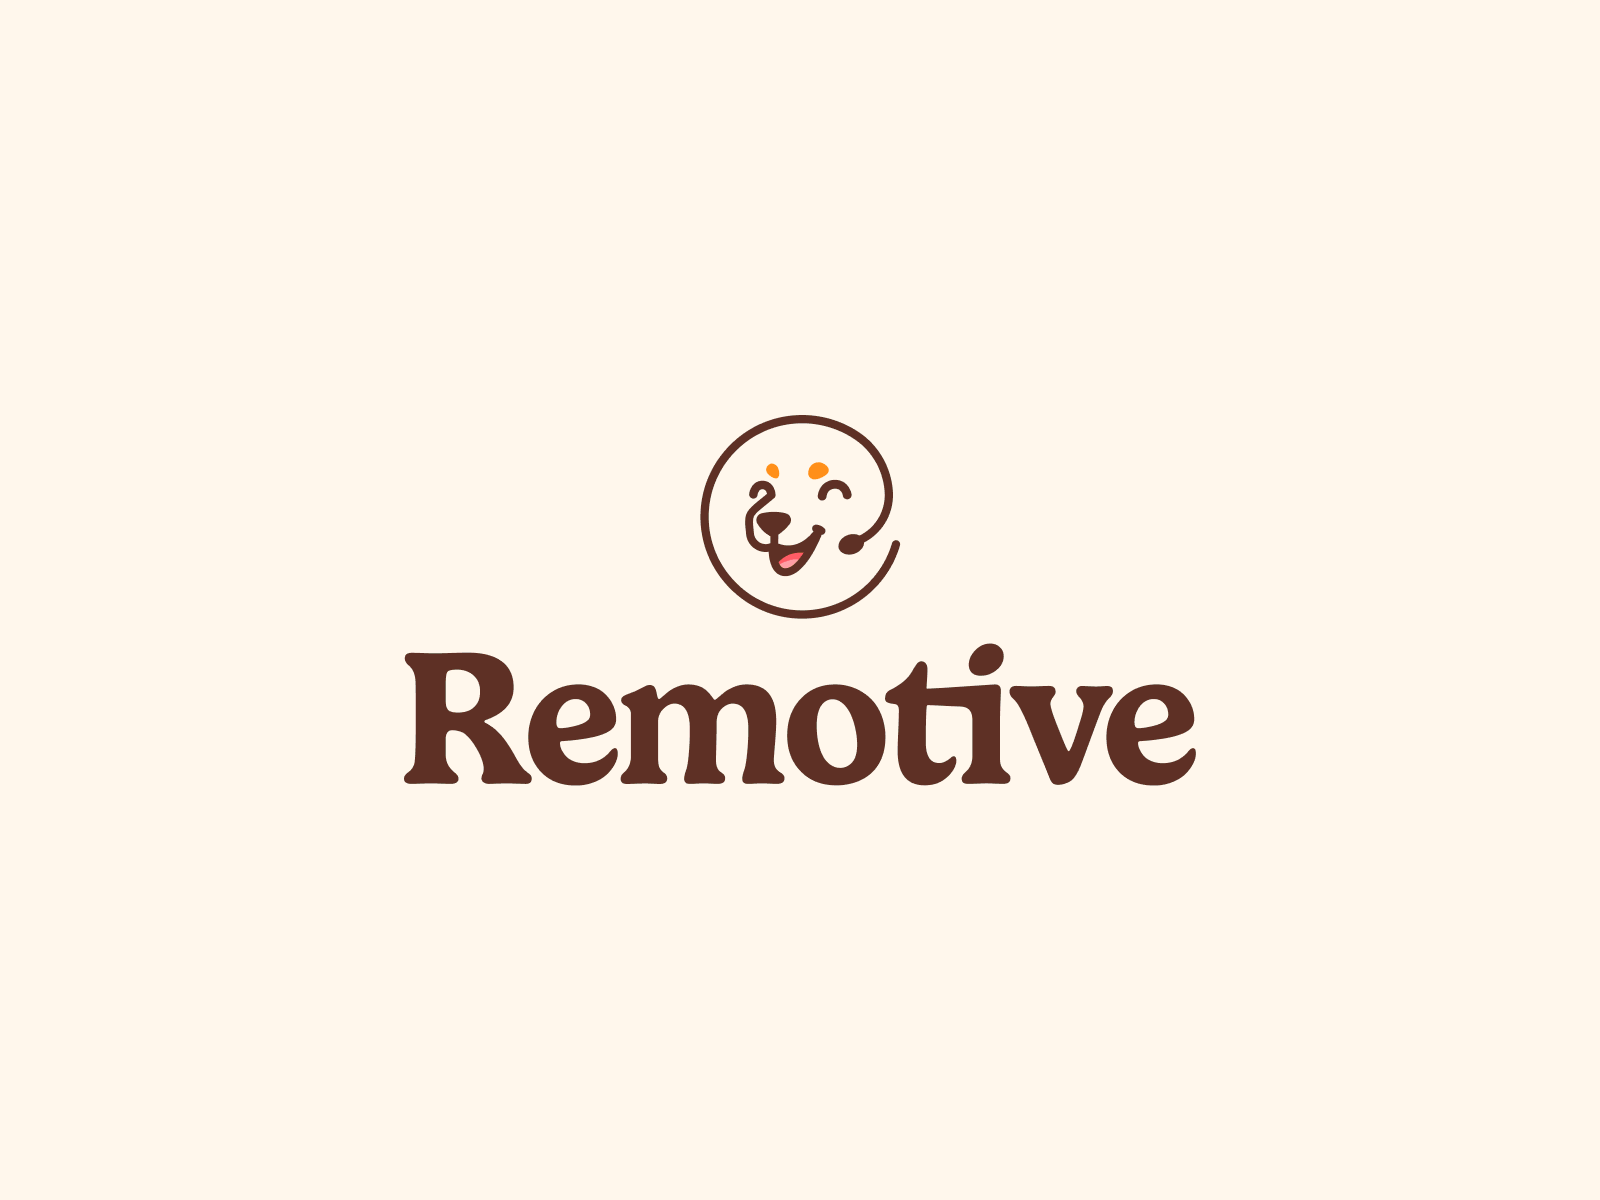 Remotive branding